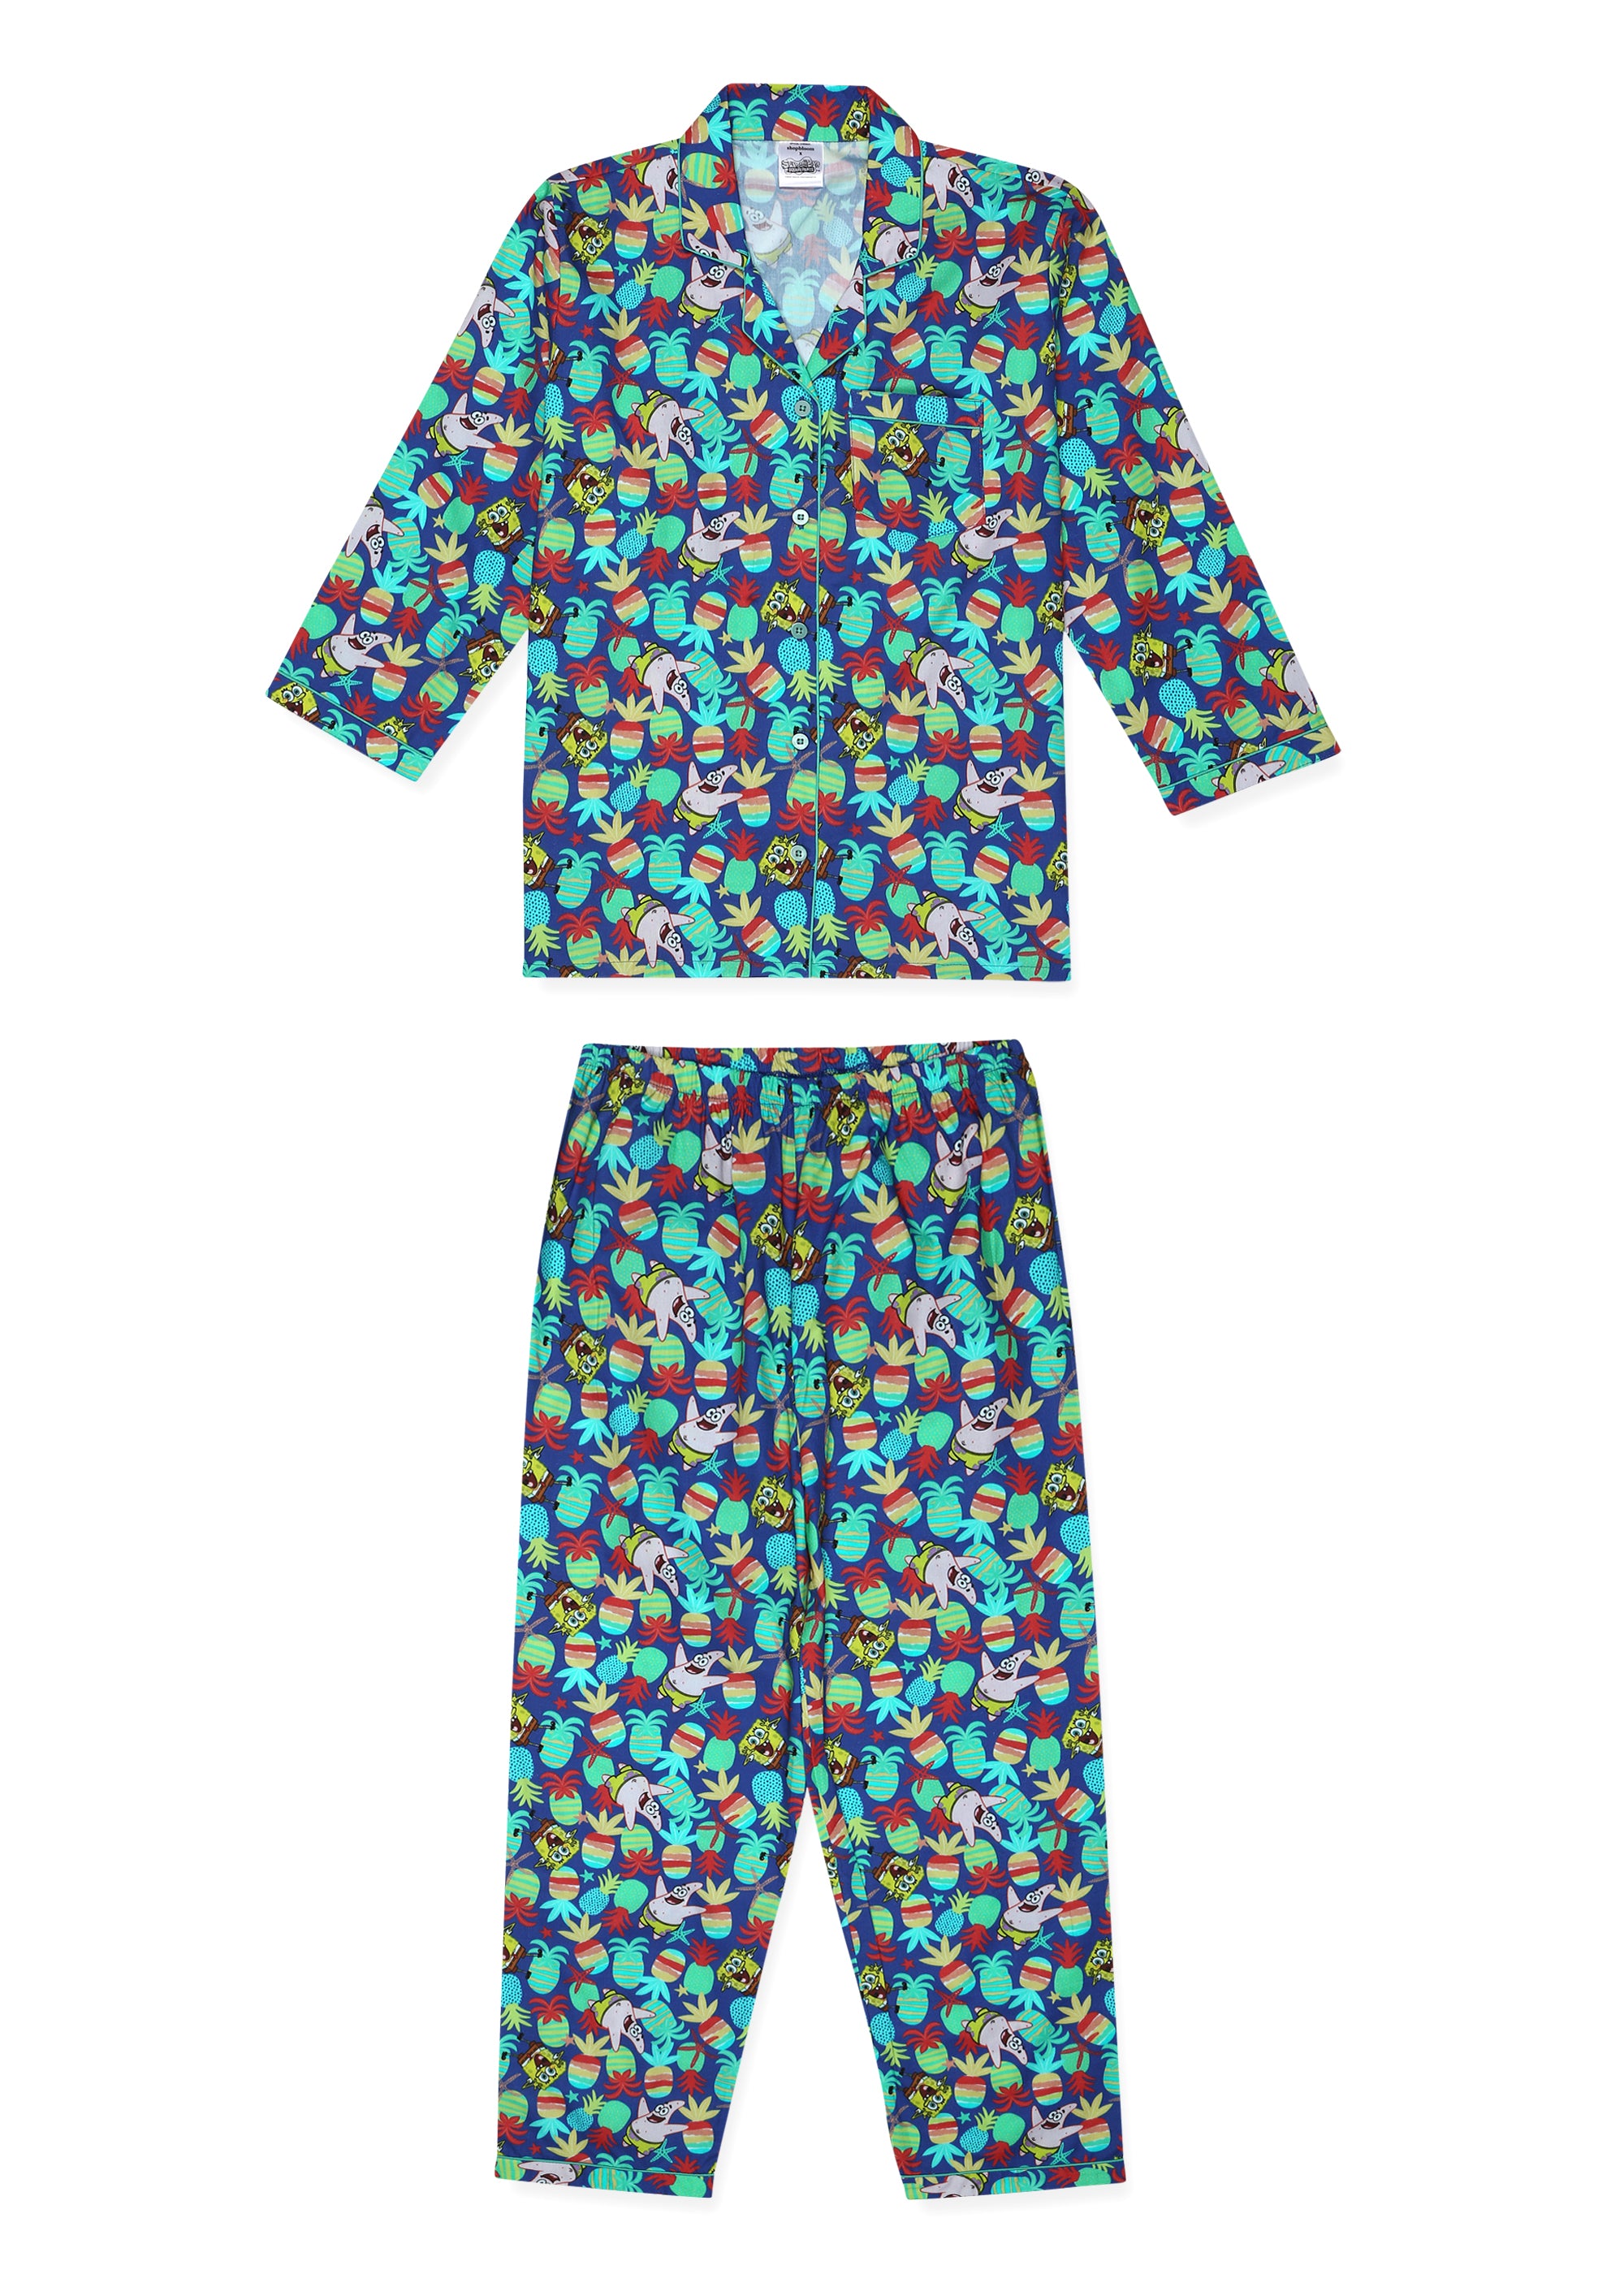 SpongeBob Pineapple Print Long Sleeve Kids Night Suit - Shopbloom